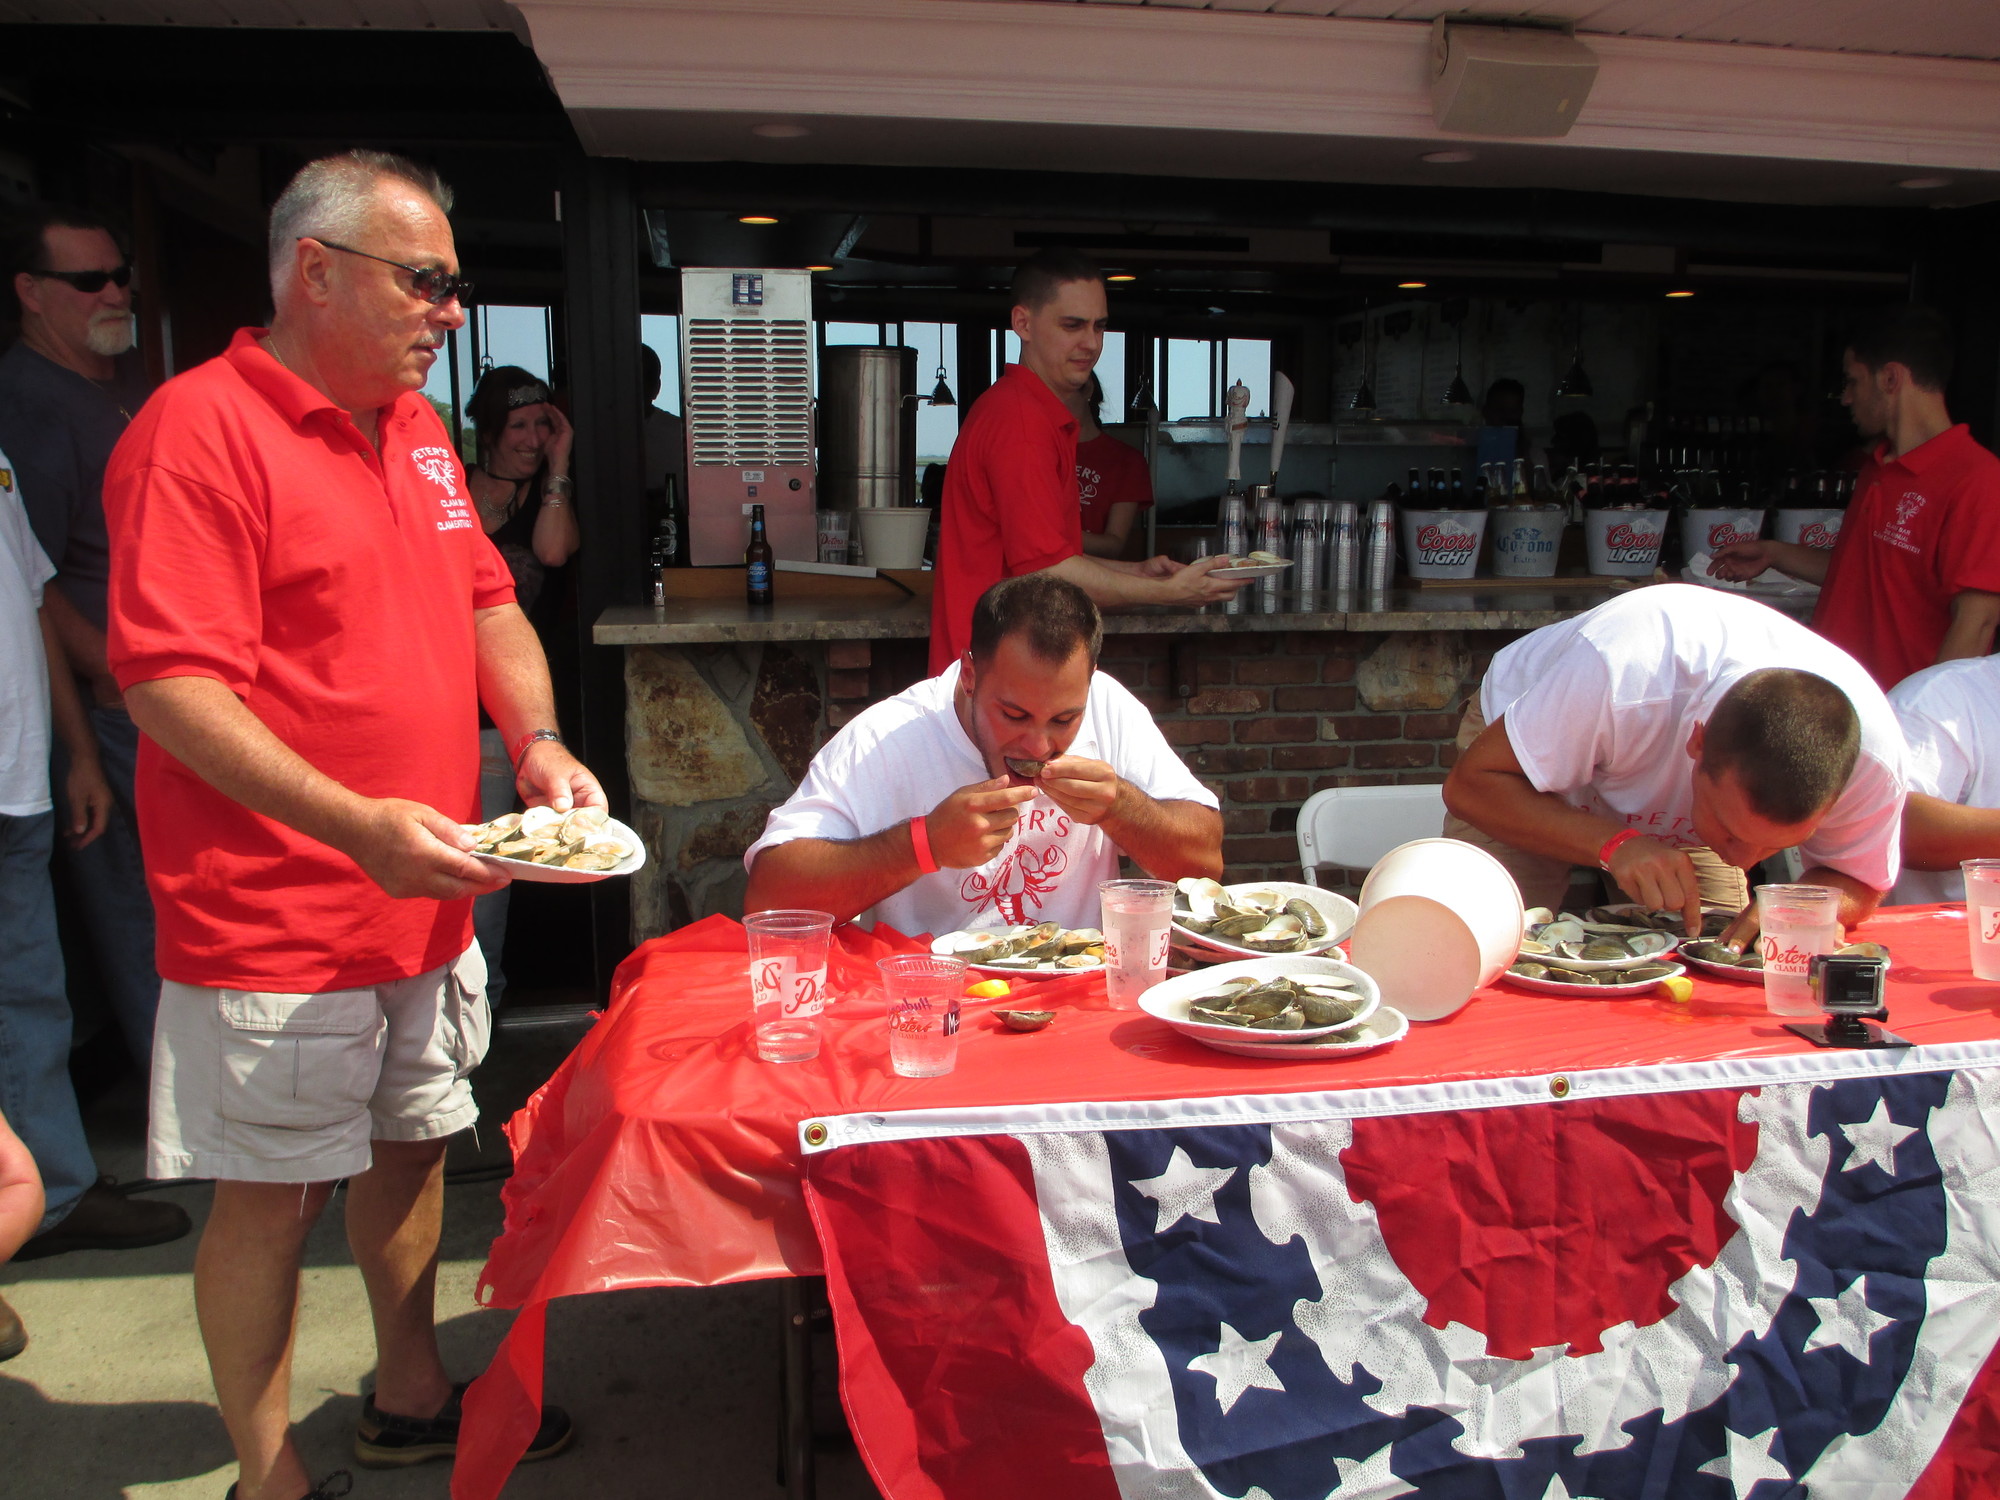 Island Park Deputy Mayor Steve D’Esposito helps restock as eating begins.